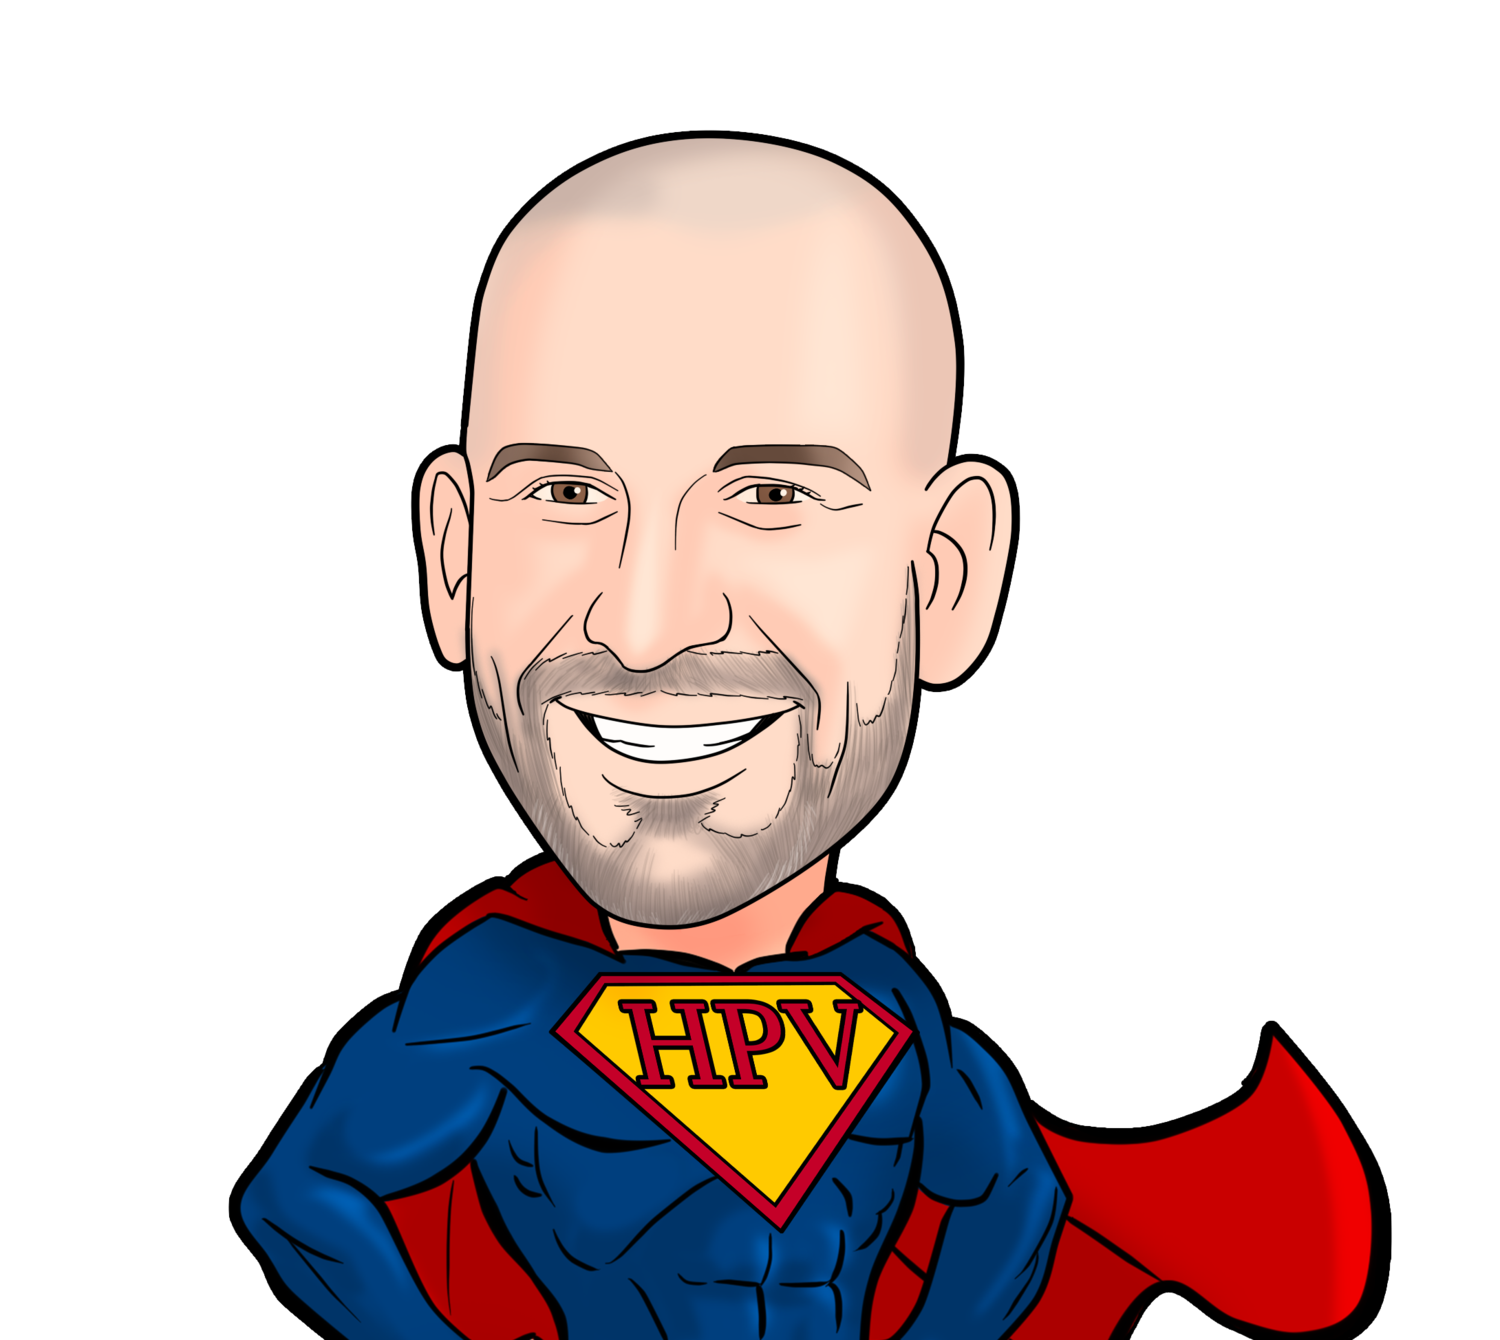 Hpv throat cancer blogs. Vaccinul HPV - cui se adreseaza si cum functioneaza?